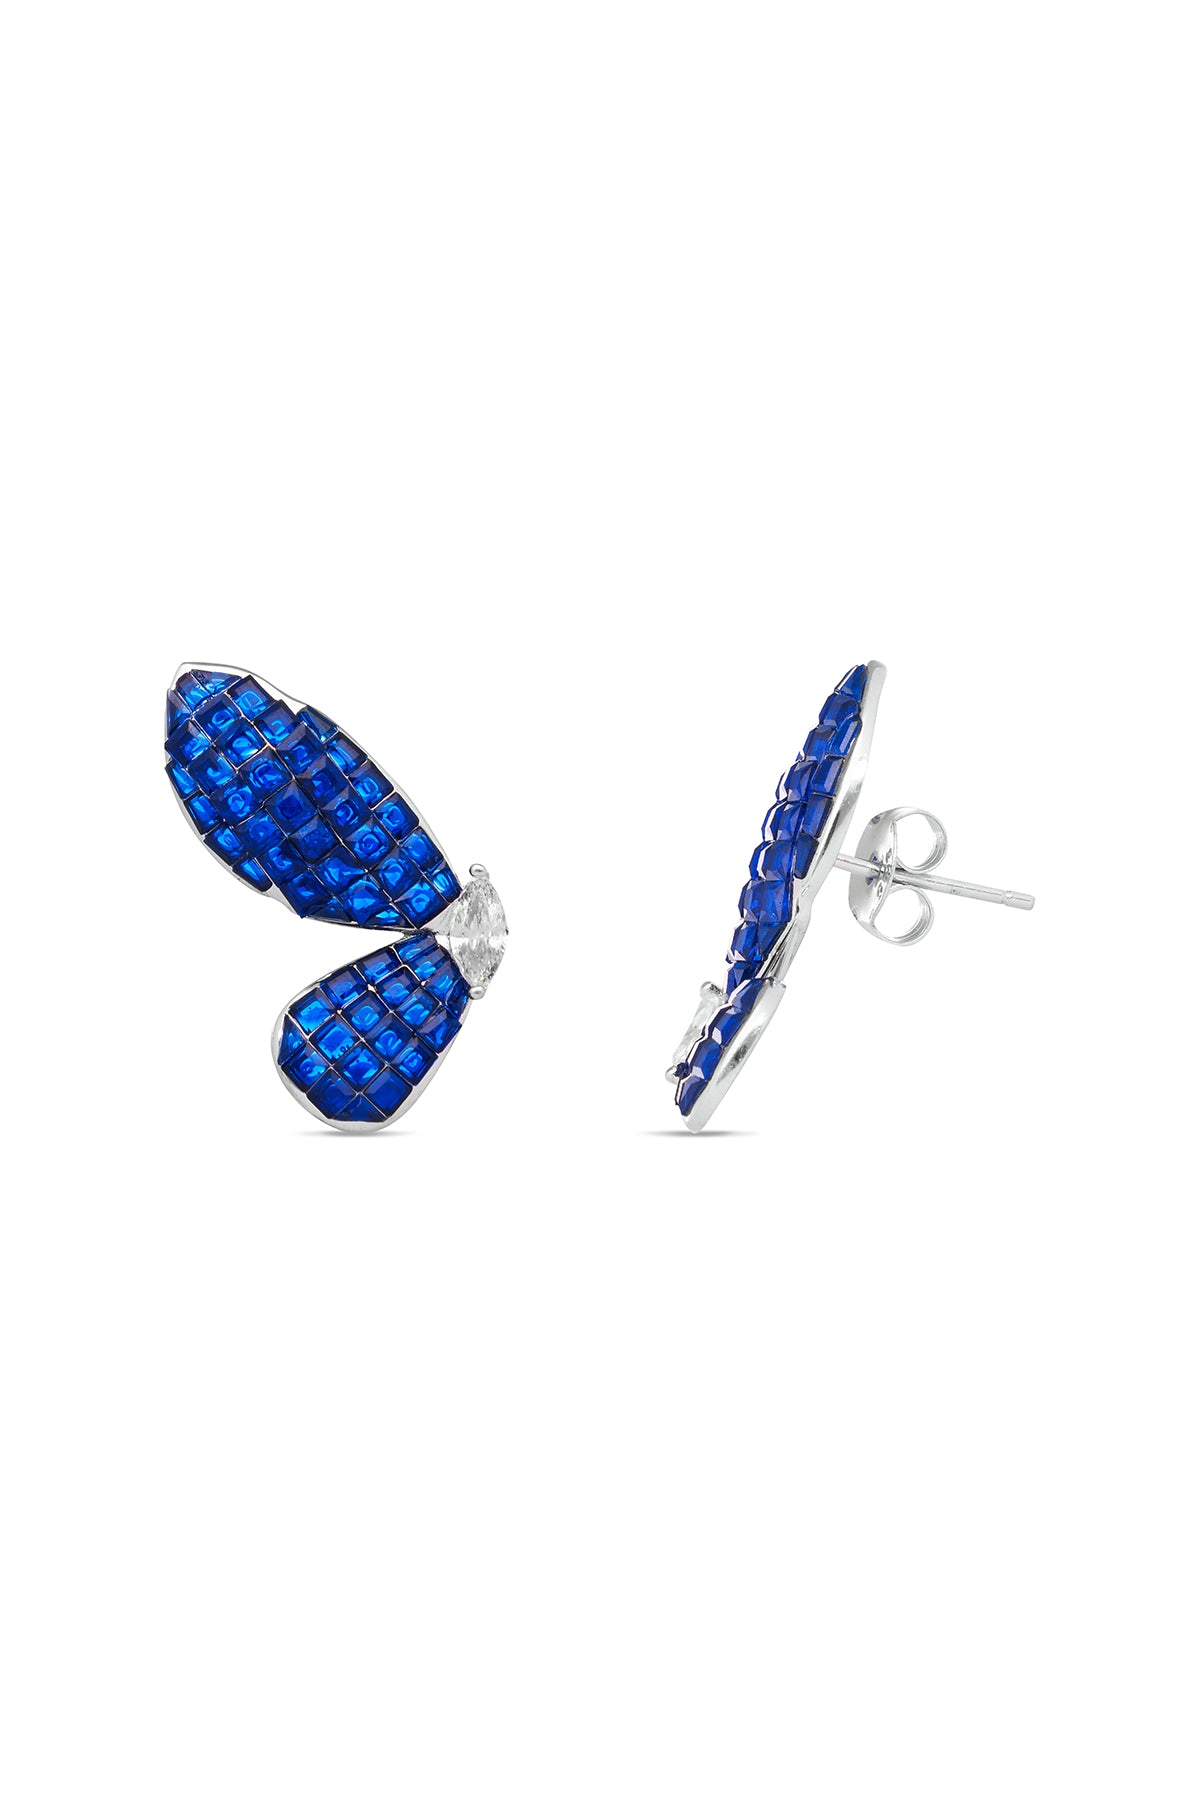 Butterfly Blue Sapphire Ballet Earrings